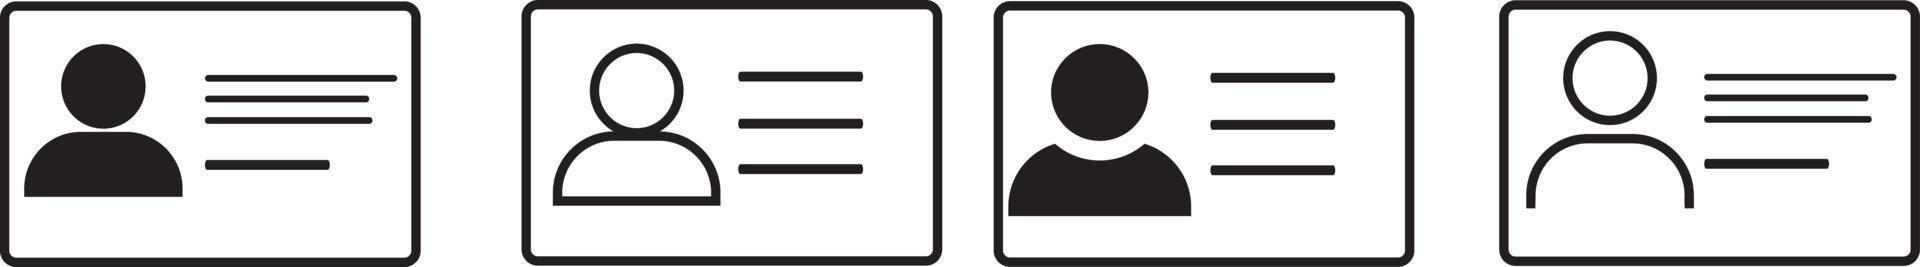 jeu d'icônes de carte d'identité, symbole de carte d'identification de permis de conduire, accident vasculaire cérébral modifiable. illustration vectorielle vecteur